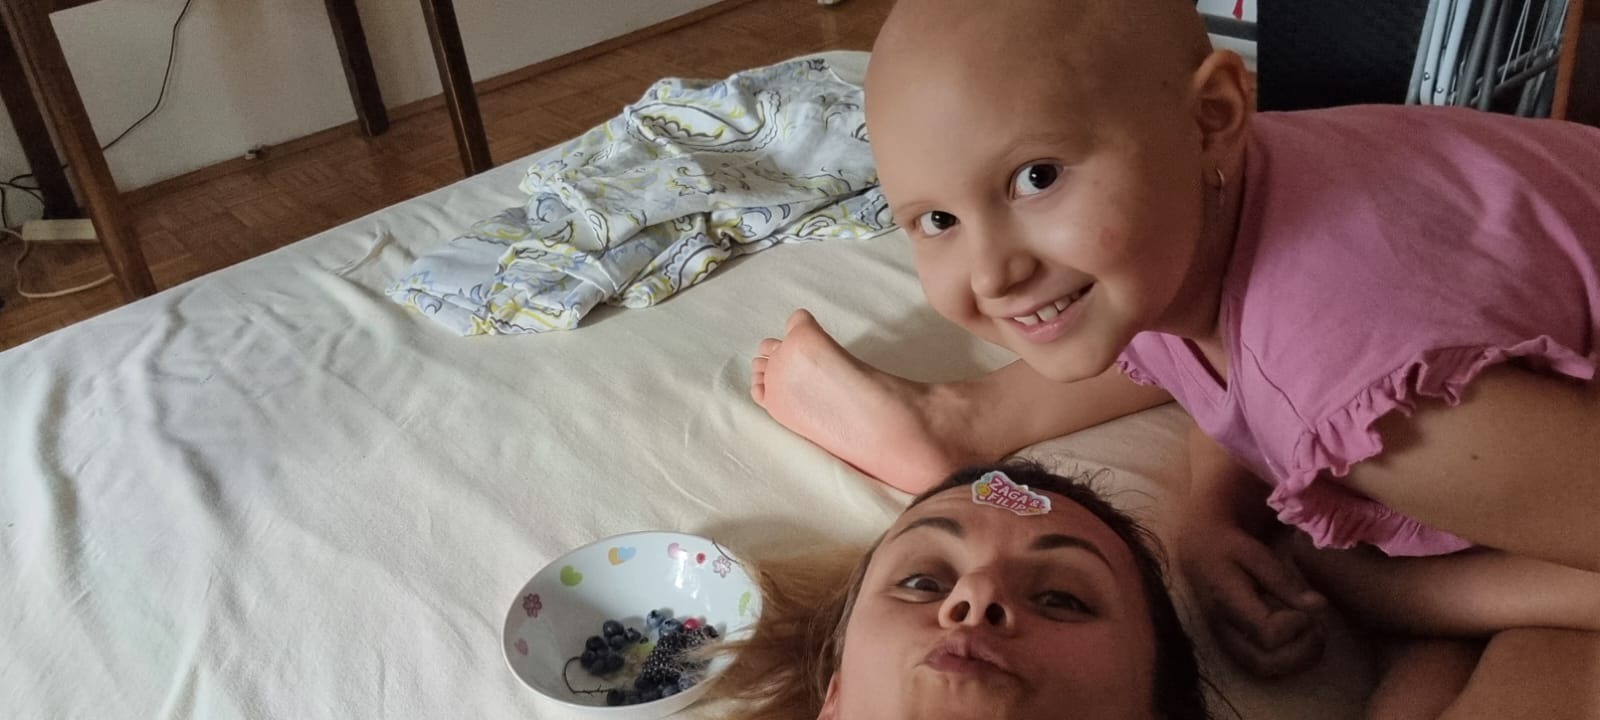 Malenoj Evi se vratila leukemija i čeka je nova borba. Pomozimo joj!